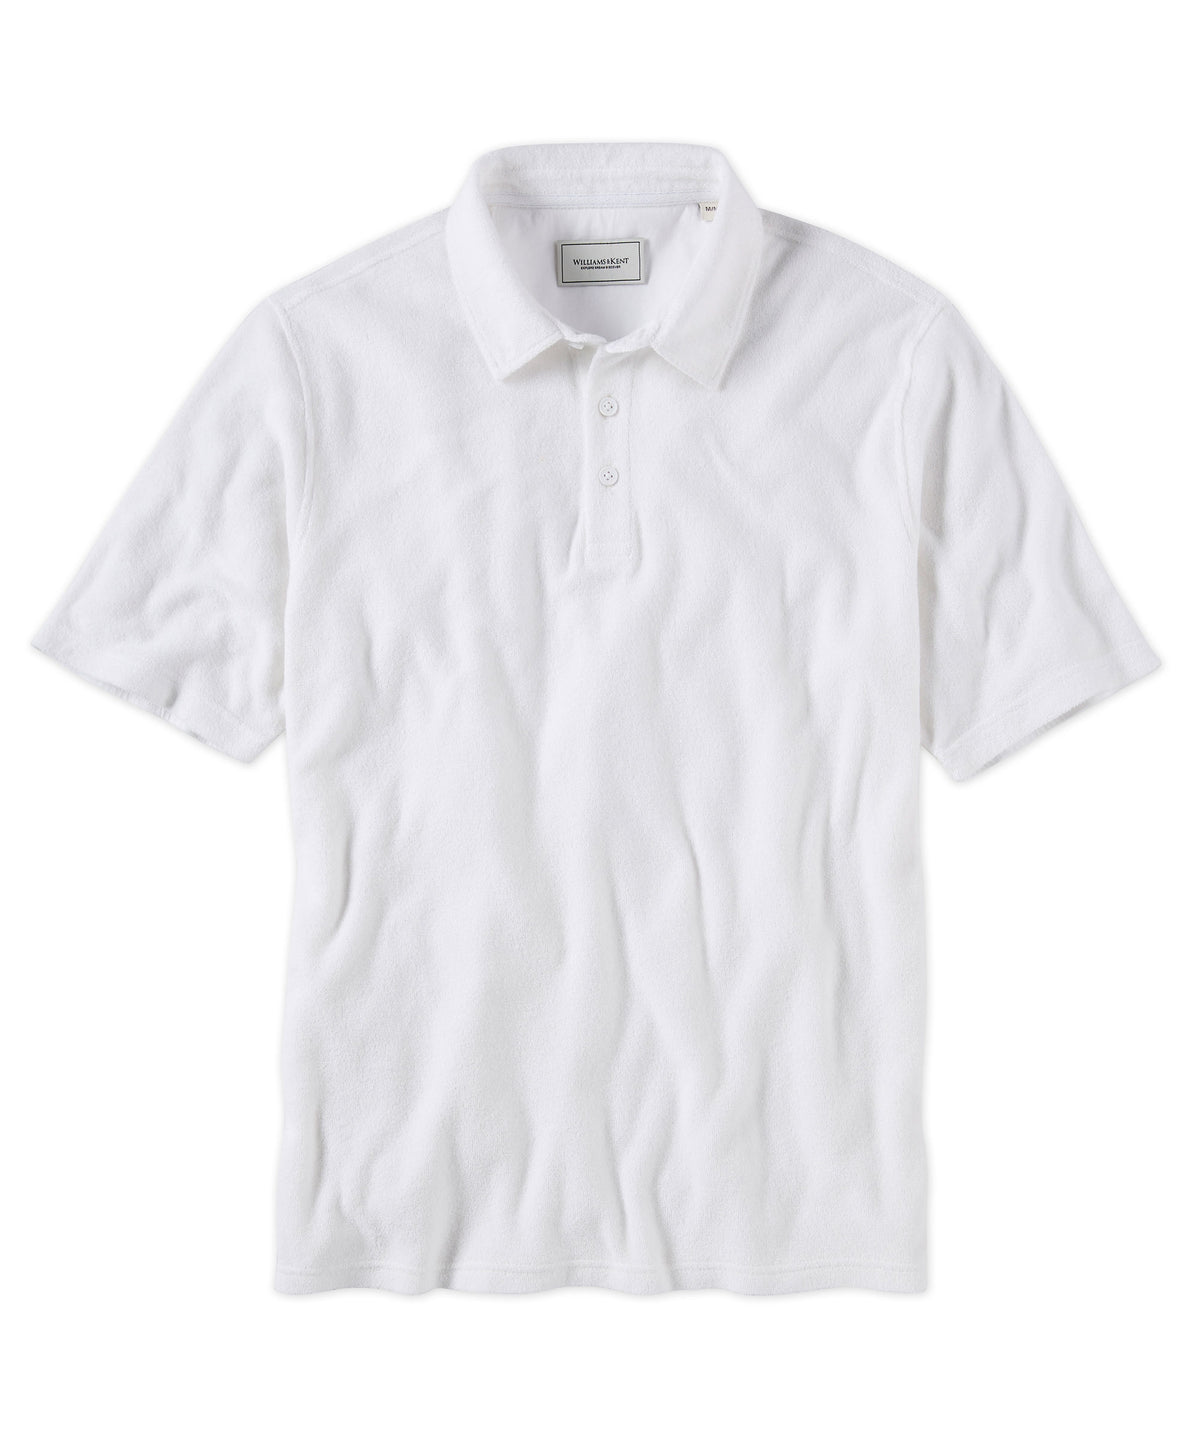 Terry Short Sleeve Polo Shirt